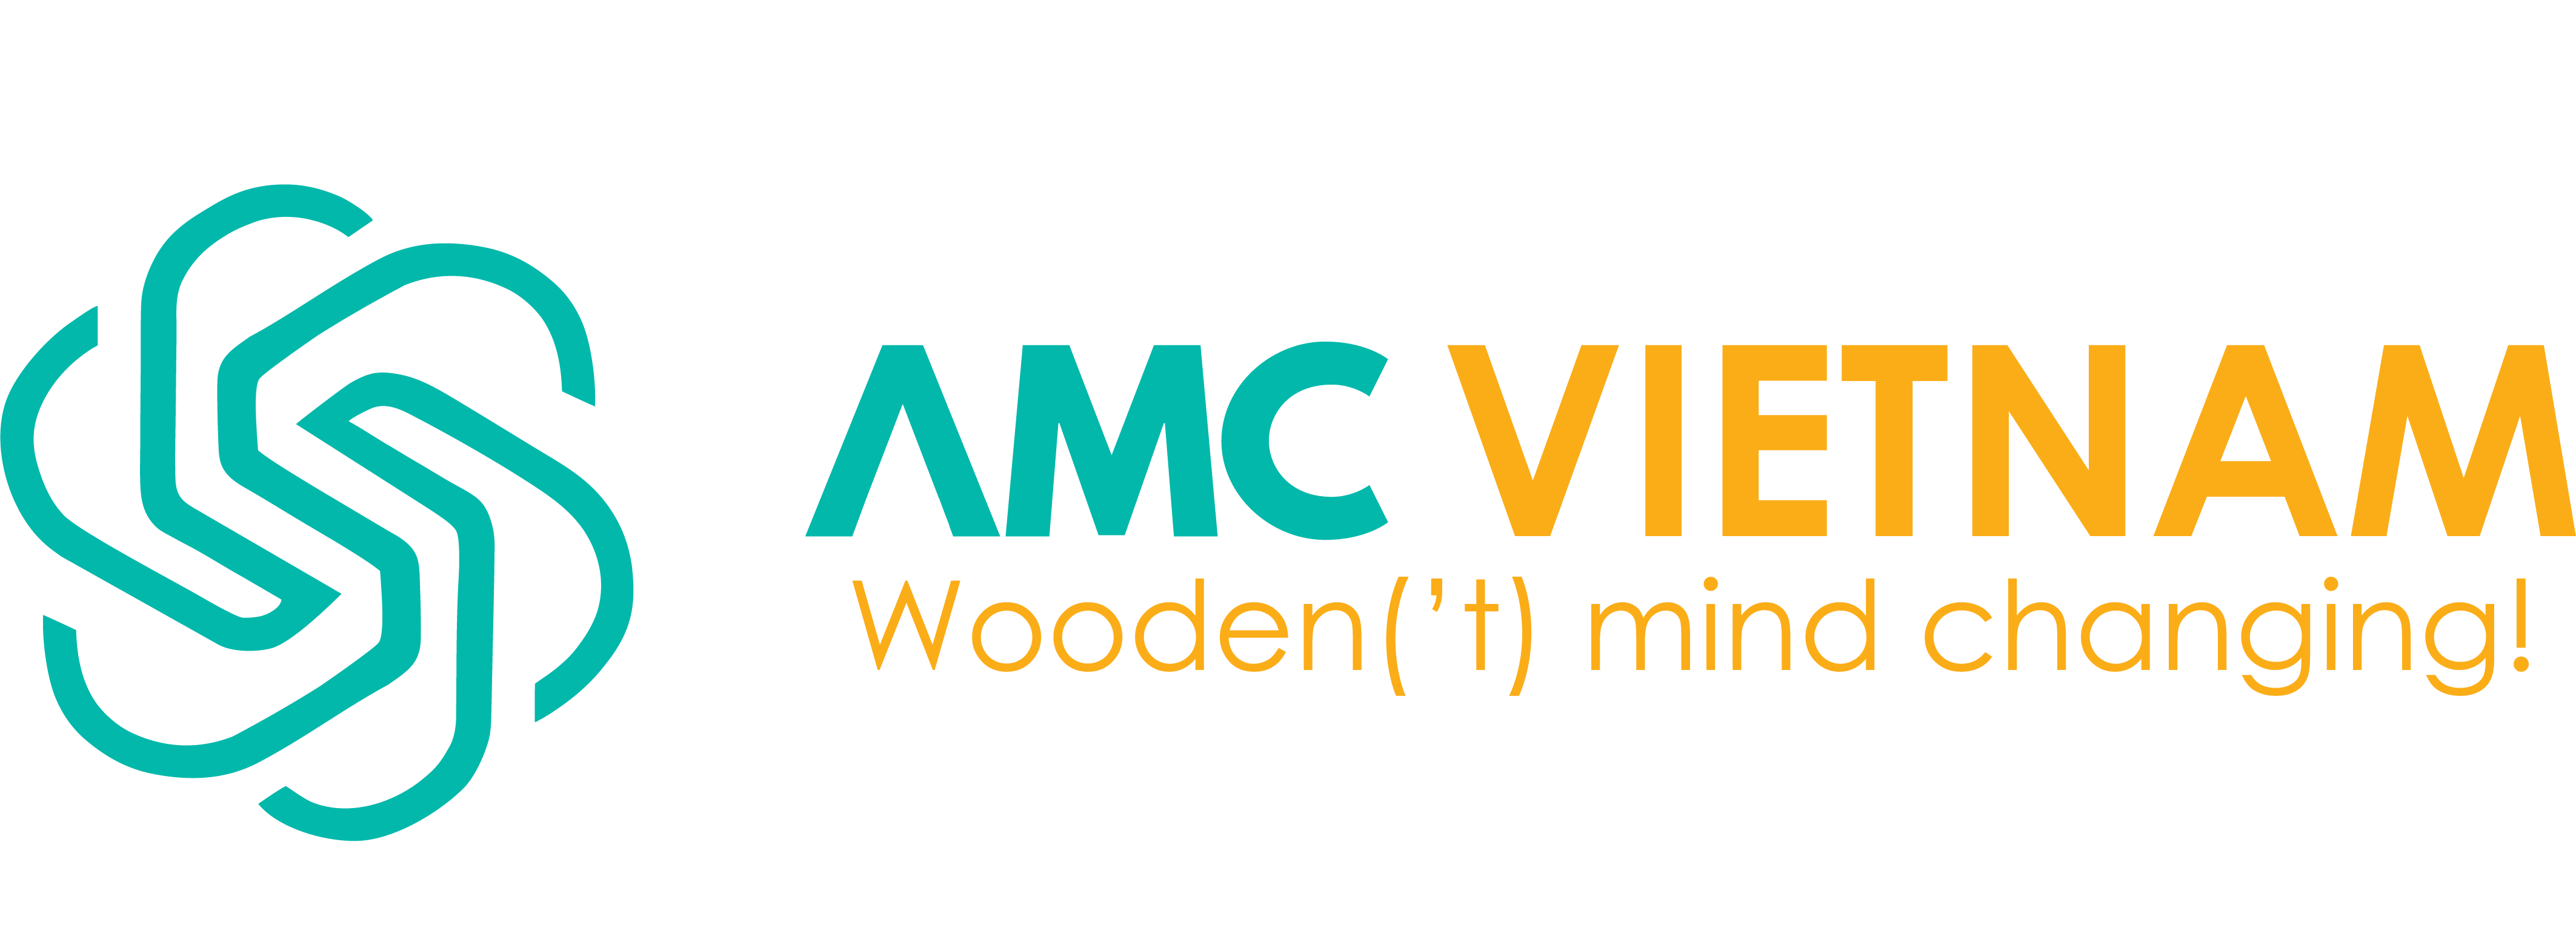 AMC Vietnam